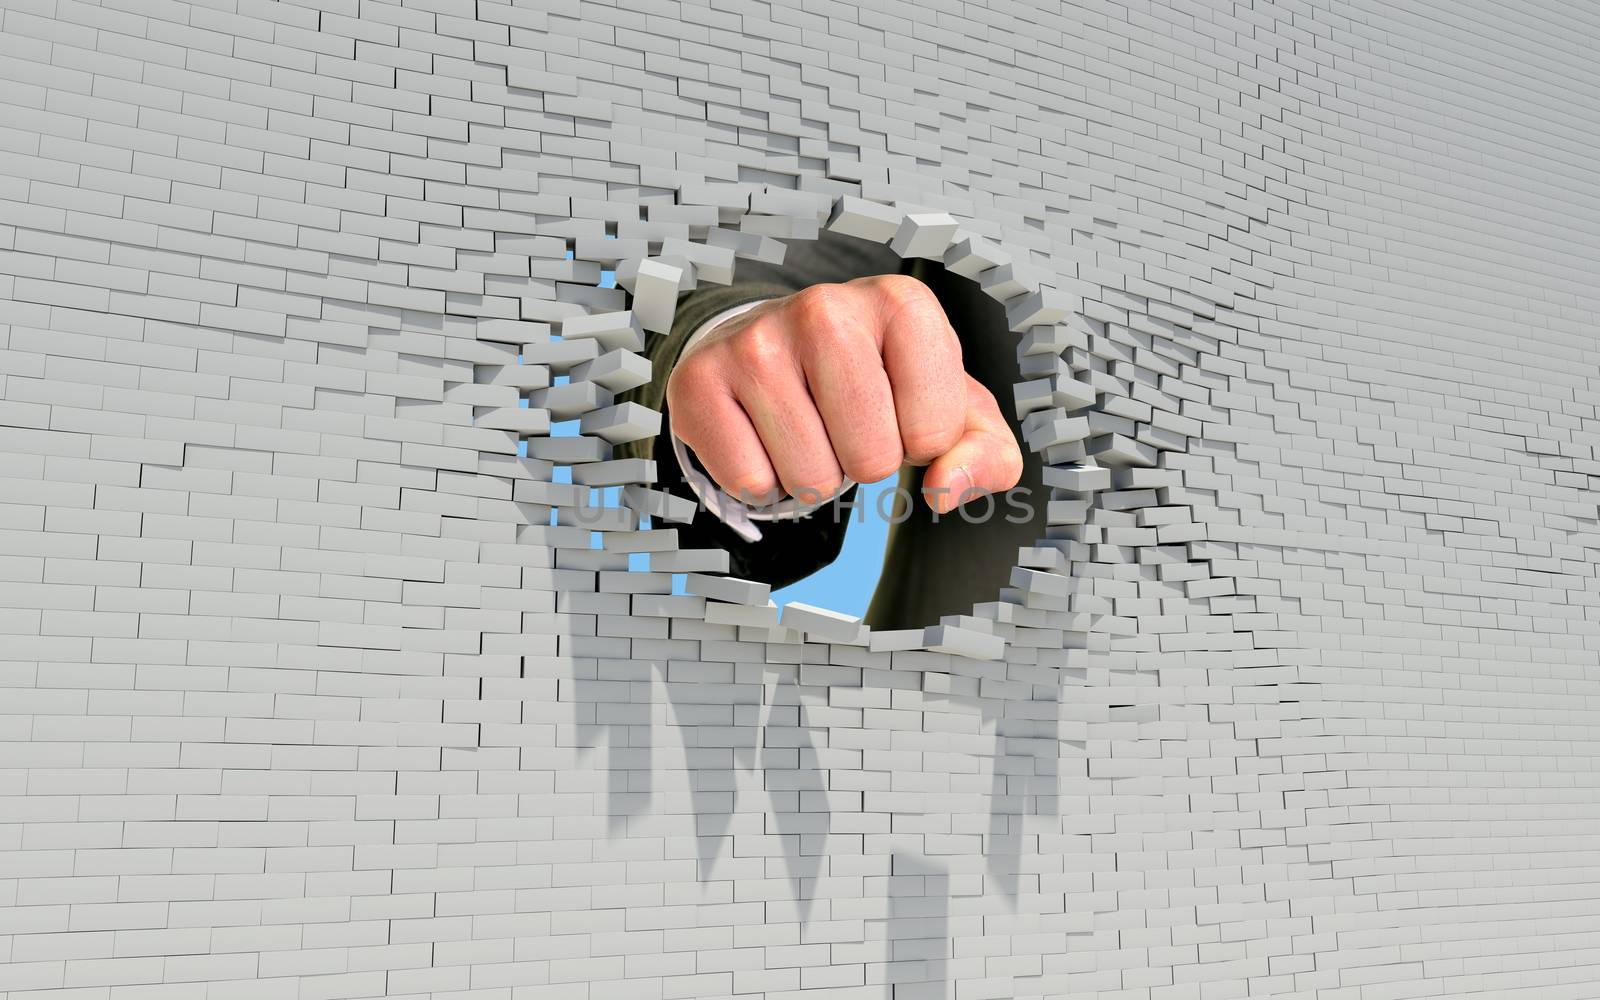 Fist punching through brick wall by cherezoff